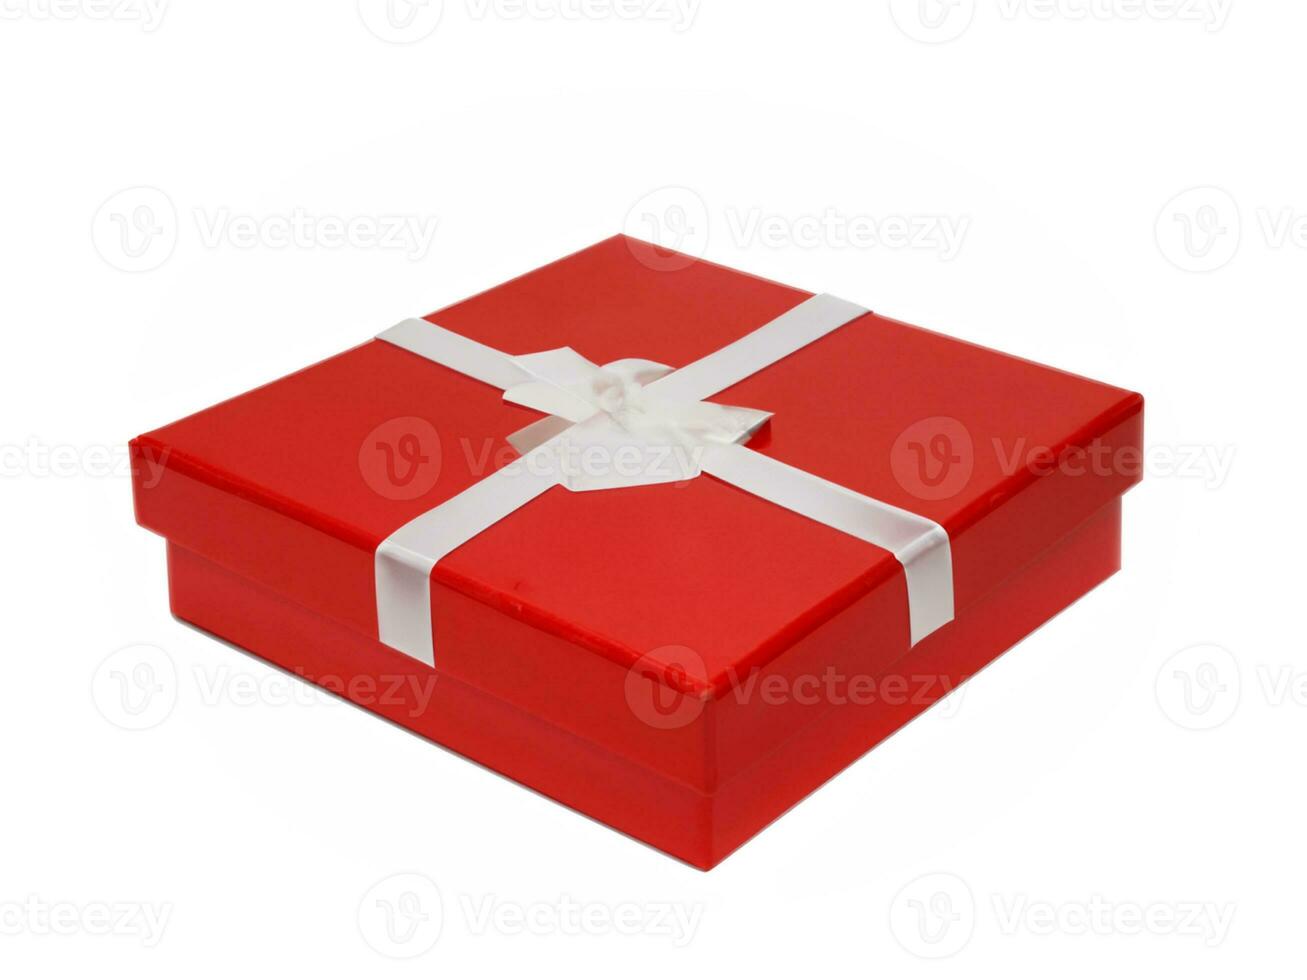 caja de regalo roja con cinta foto